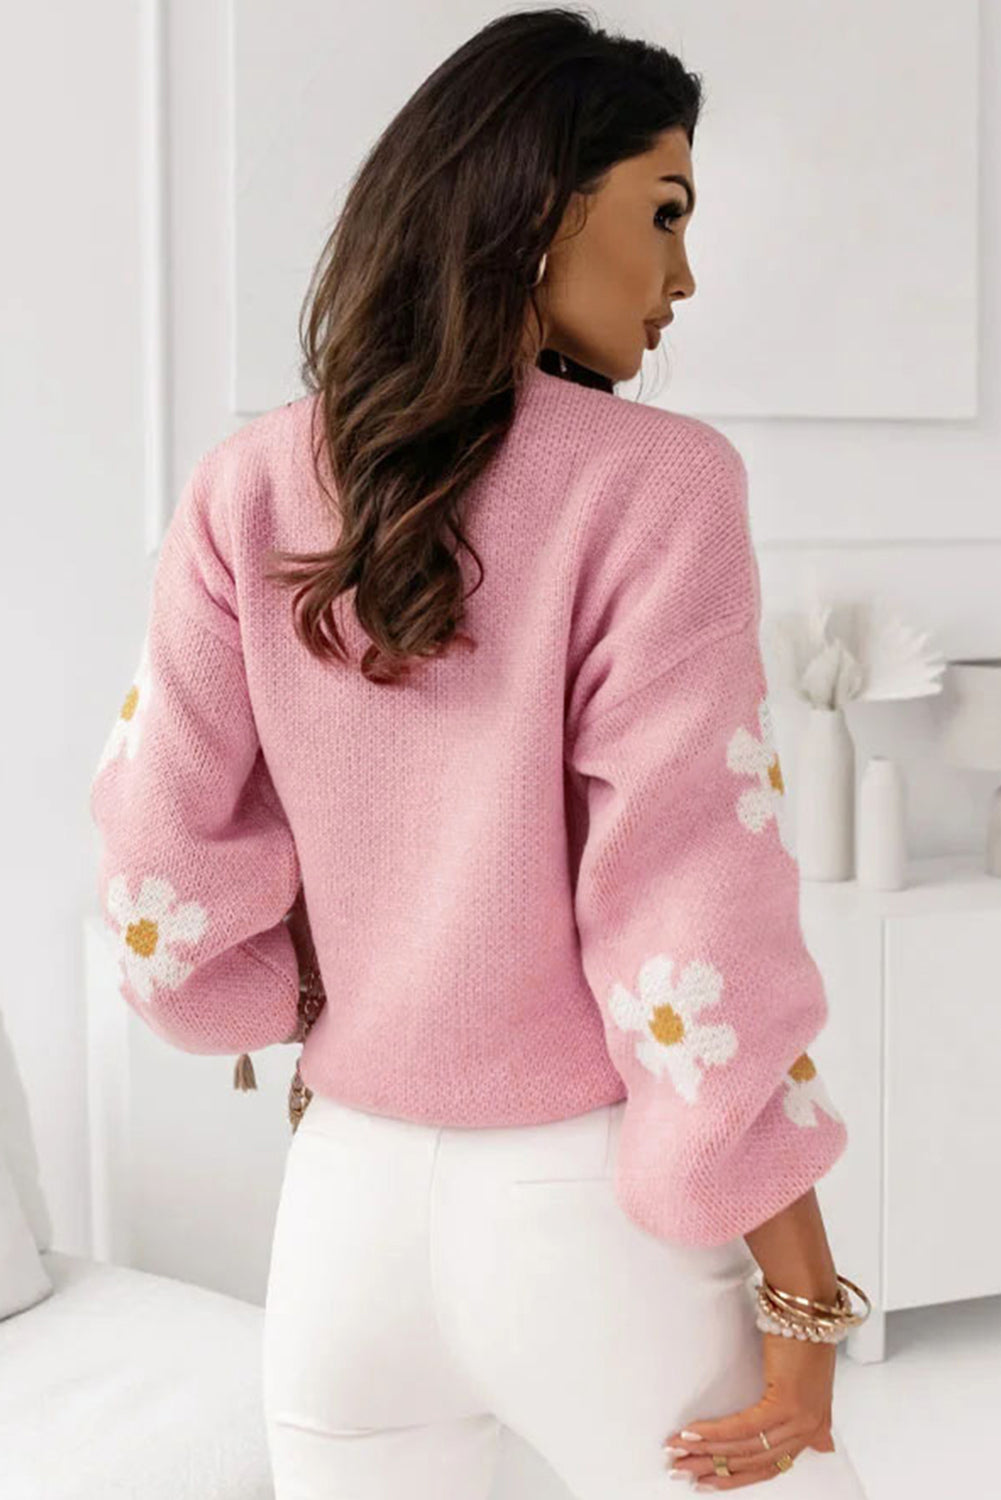 Bledo kaki roza pulover na spuščena ramena s cvetličnim vzorcem